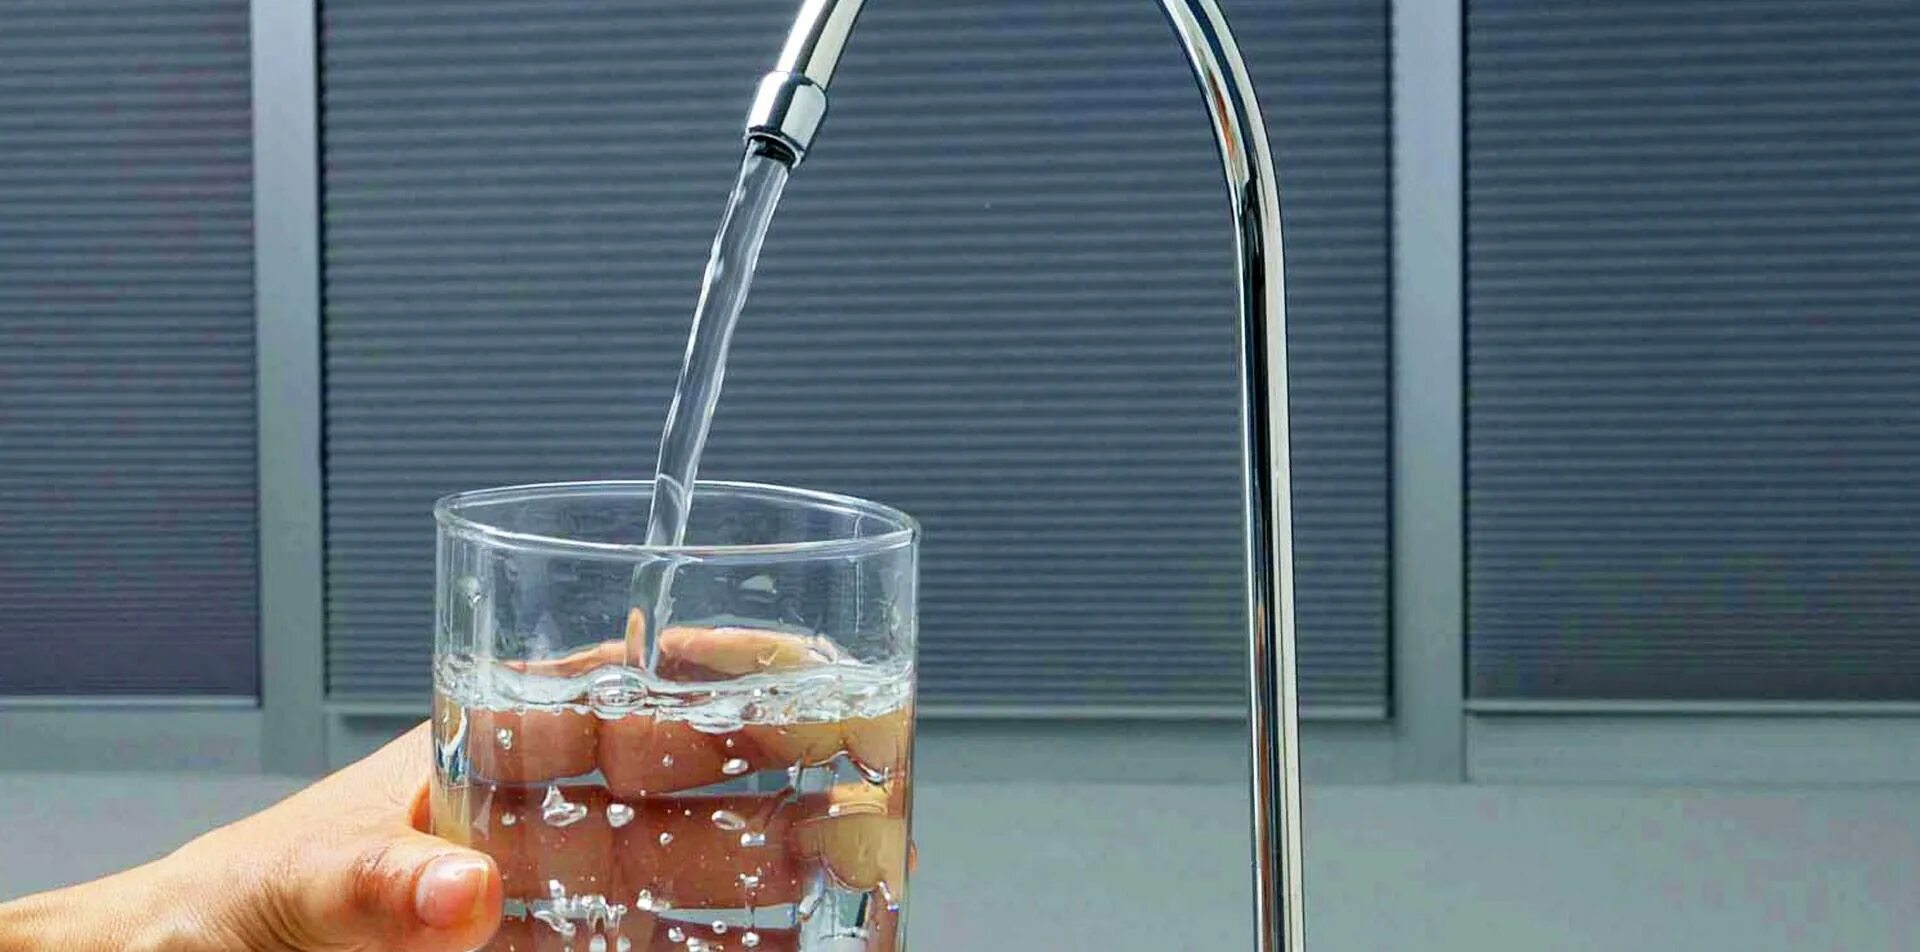 Вода из крана. Кран с водой. Питьевая вода. Вода из водопровода. Пить фильтрованную воду